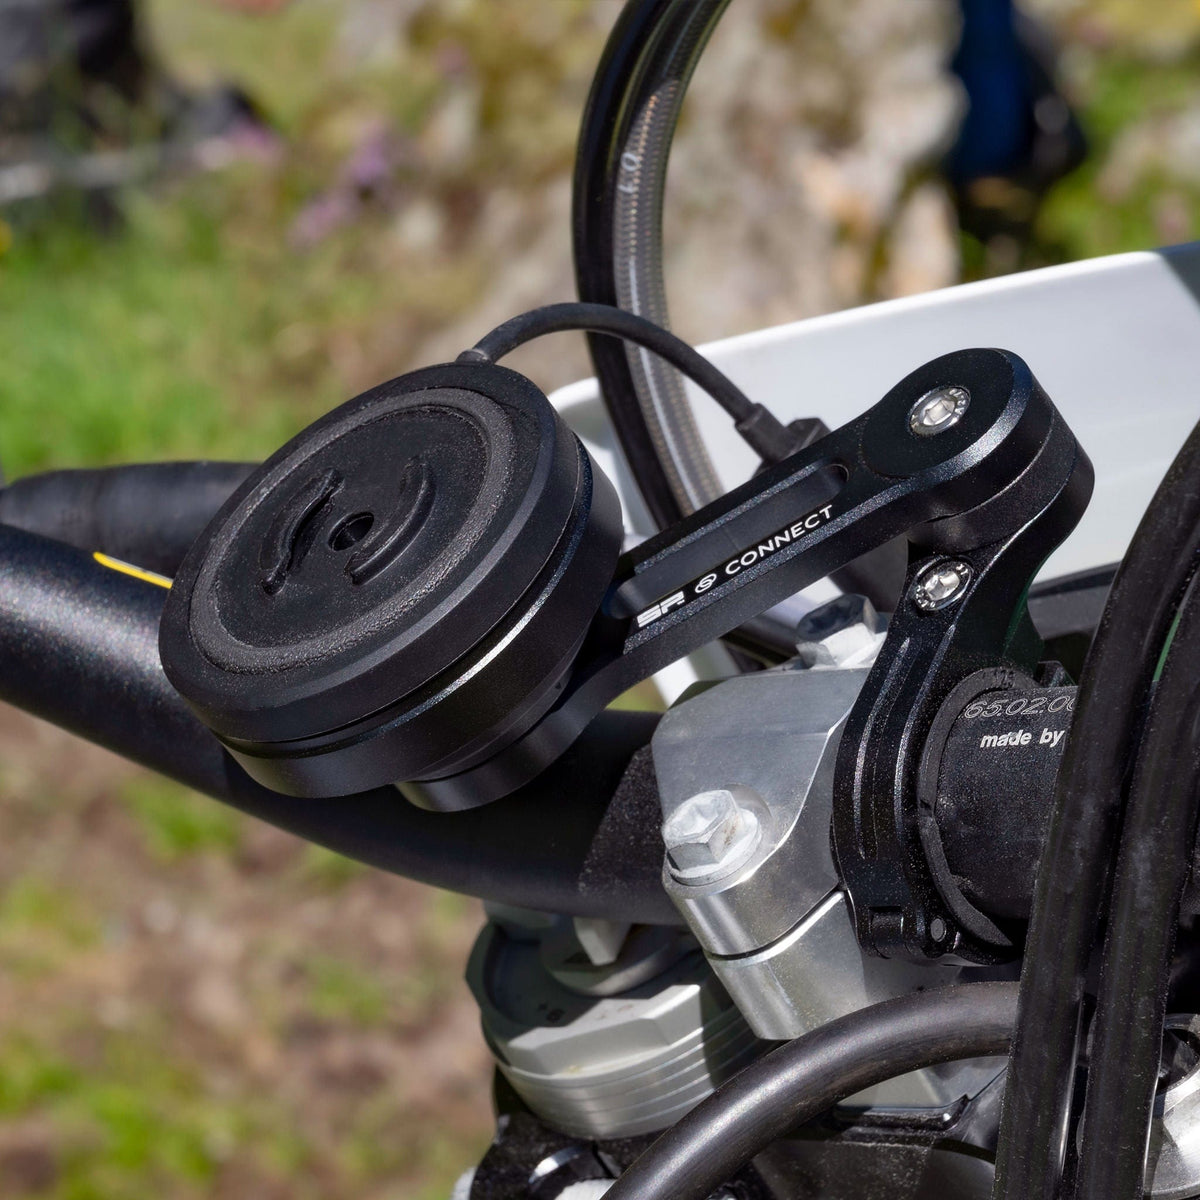 Vibration Zwei-wege-wegfahrsperre Für Motorräder, Anti-schneiden